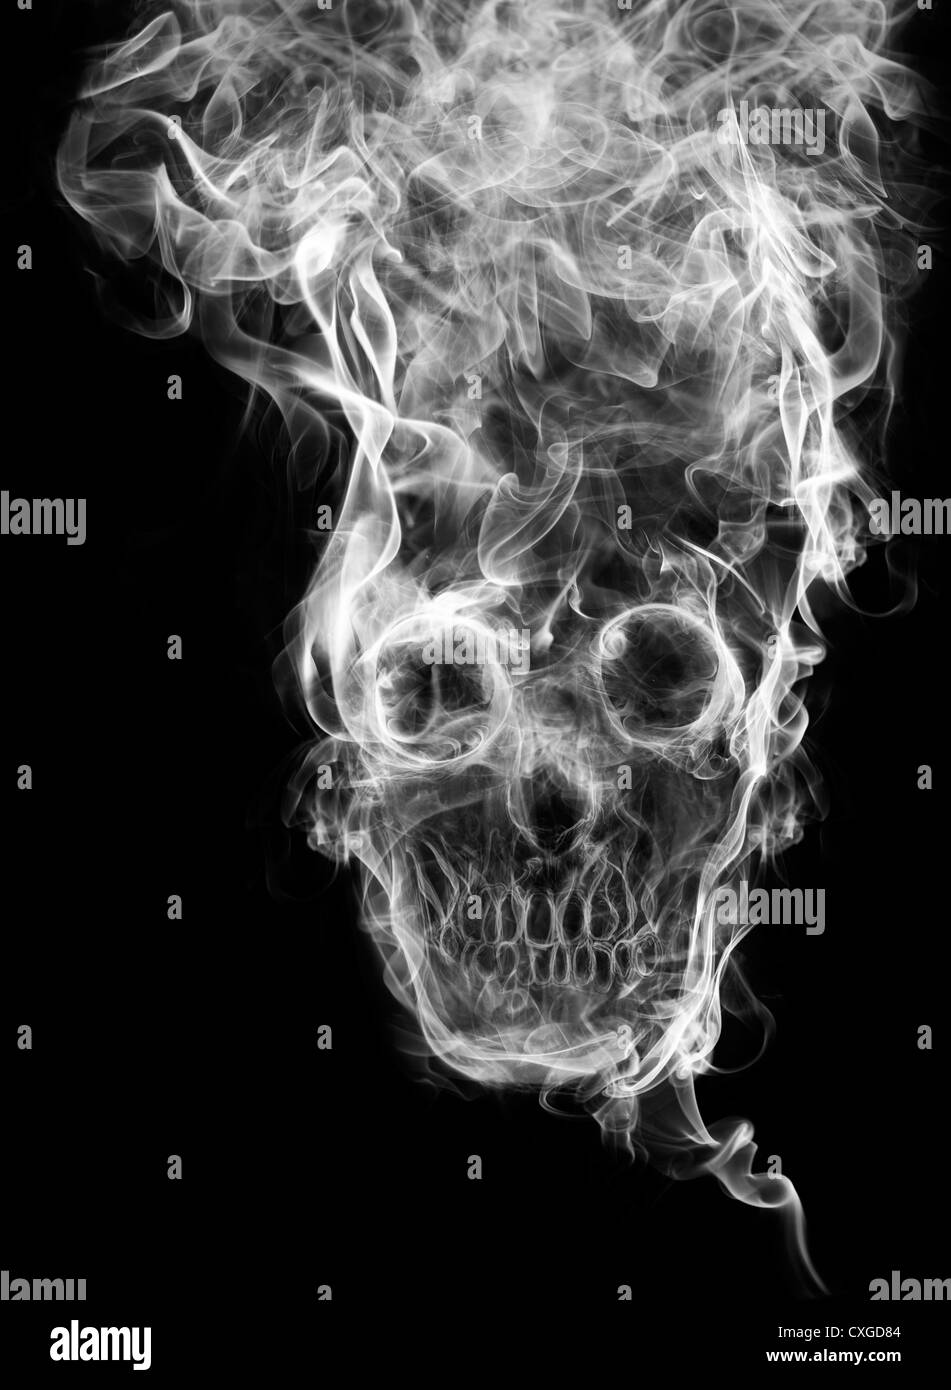 Crâne de la fumée. La fumée des morts crâne formé, comme un symbole des dangers du tabac pour la santé et d'une mort imminente de personnes. Banque D'Images